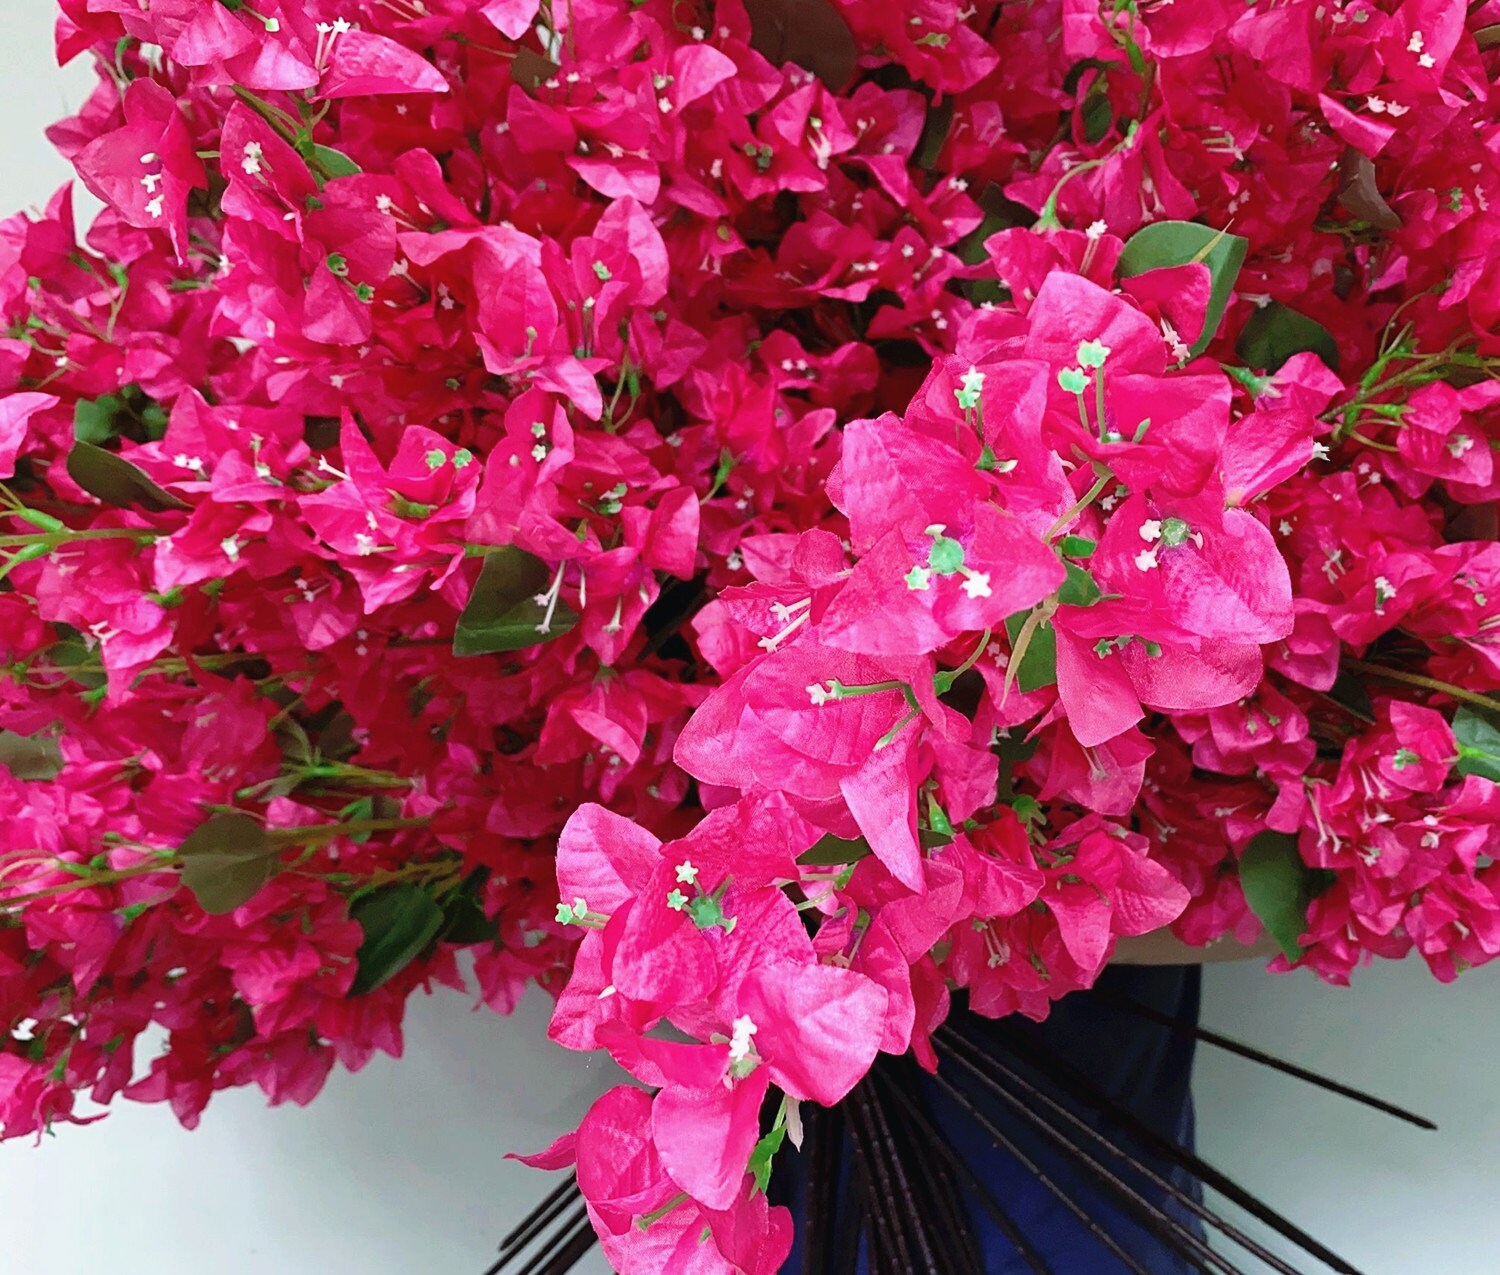 Pack de 4 Fucsia Flores de Seda De Buganvillas Artificiales Ramas De Flores  Falsas Largas Tallos Florales Ramas de Plantas para La Decoración del Hogar  de Bodas -  México